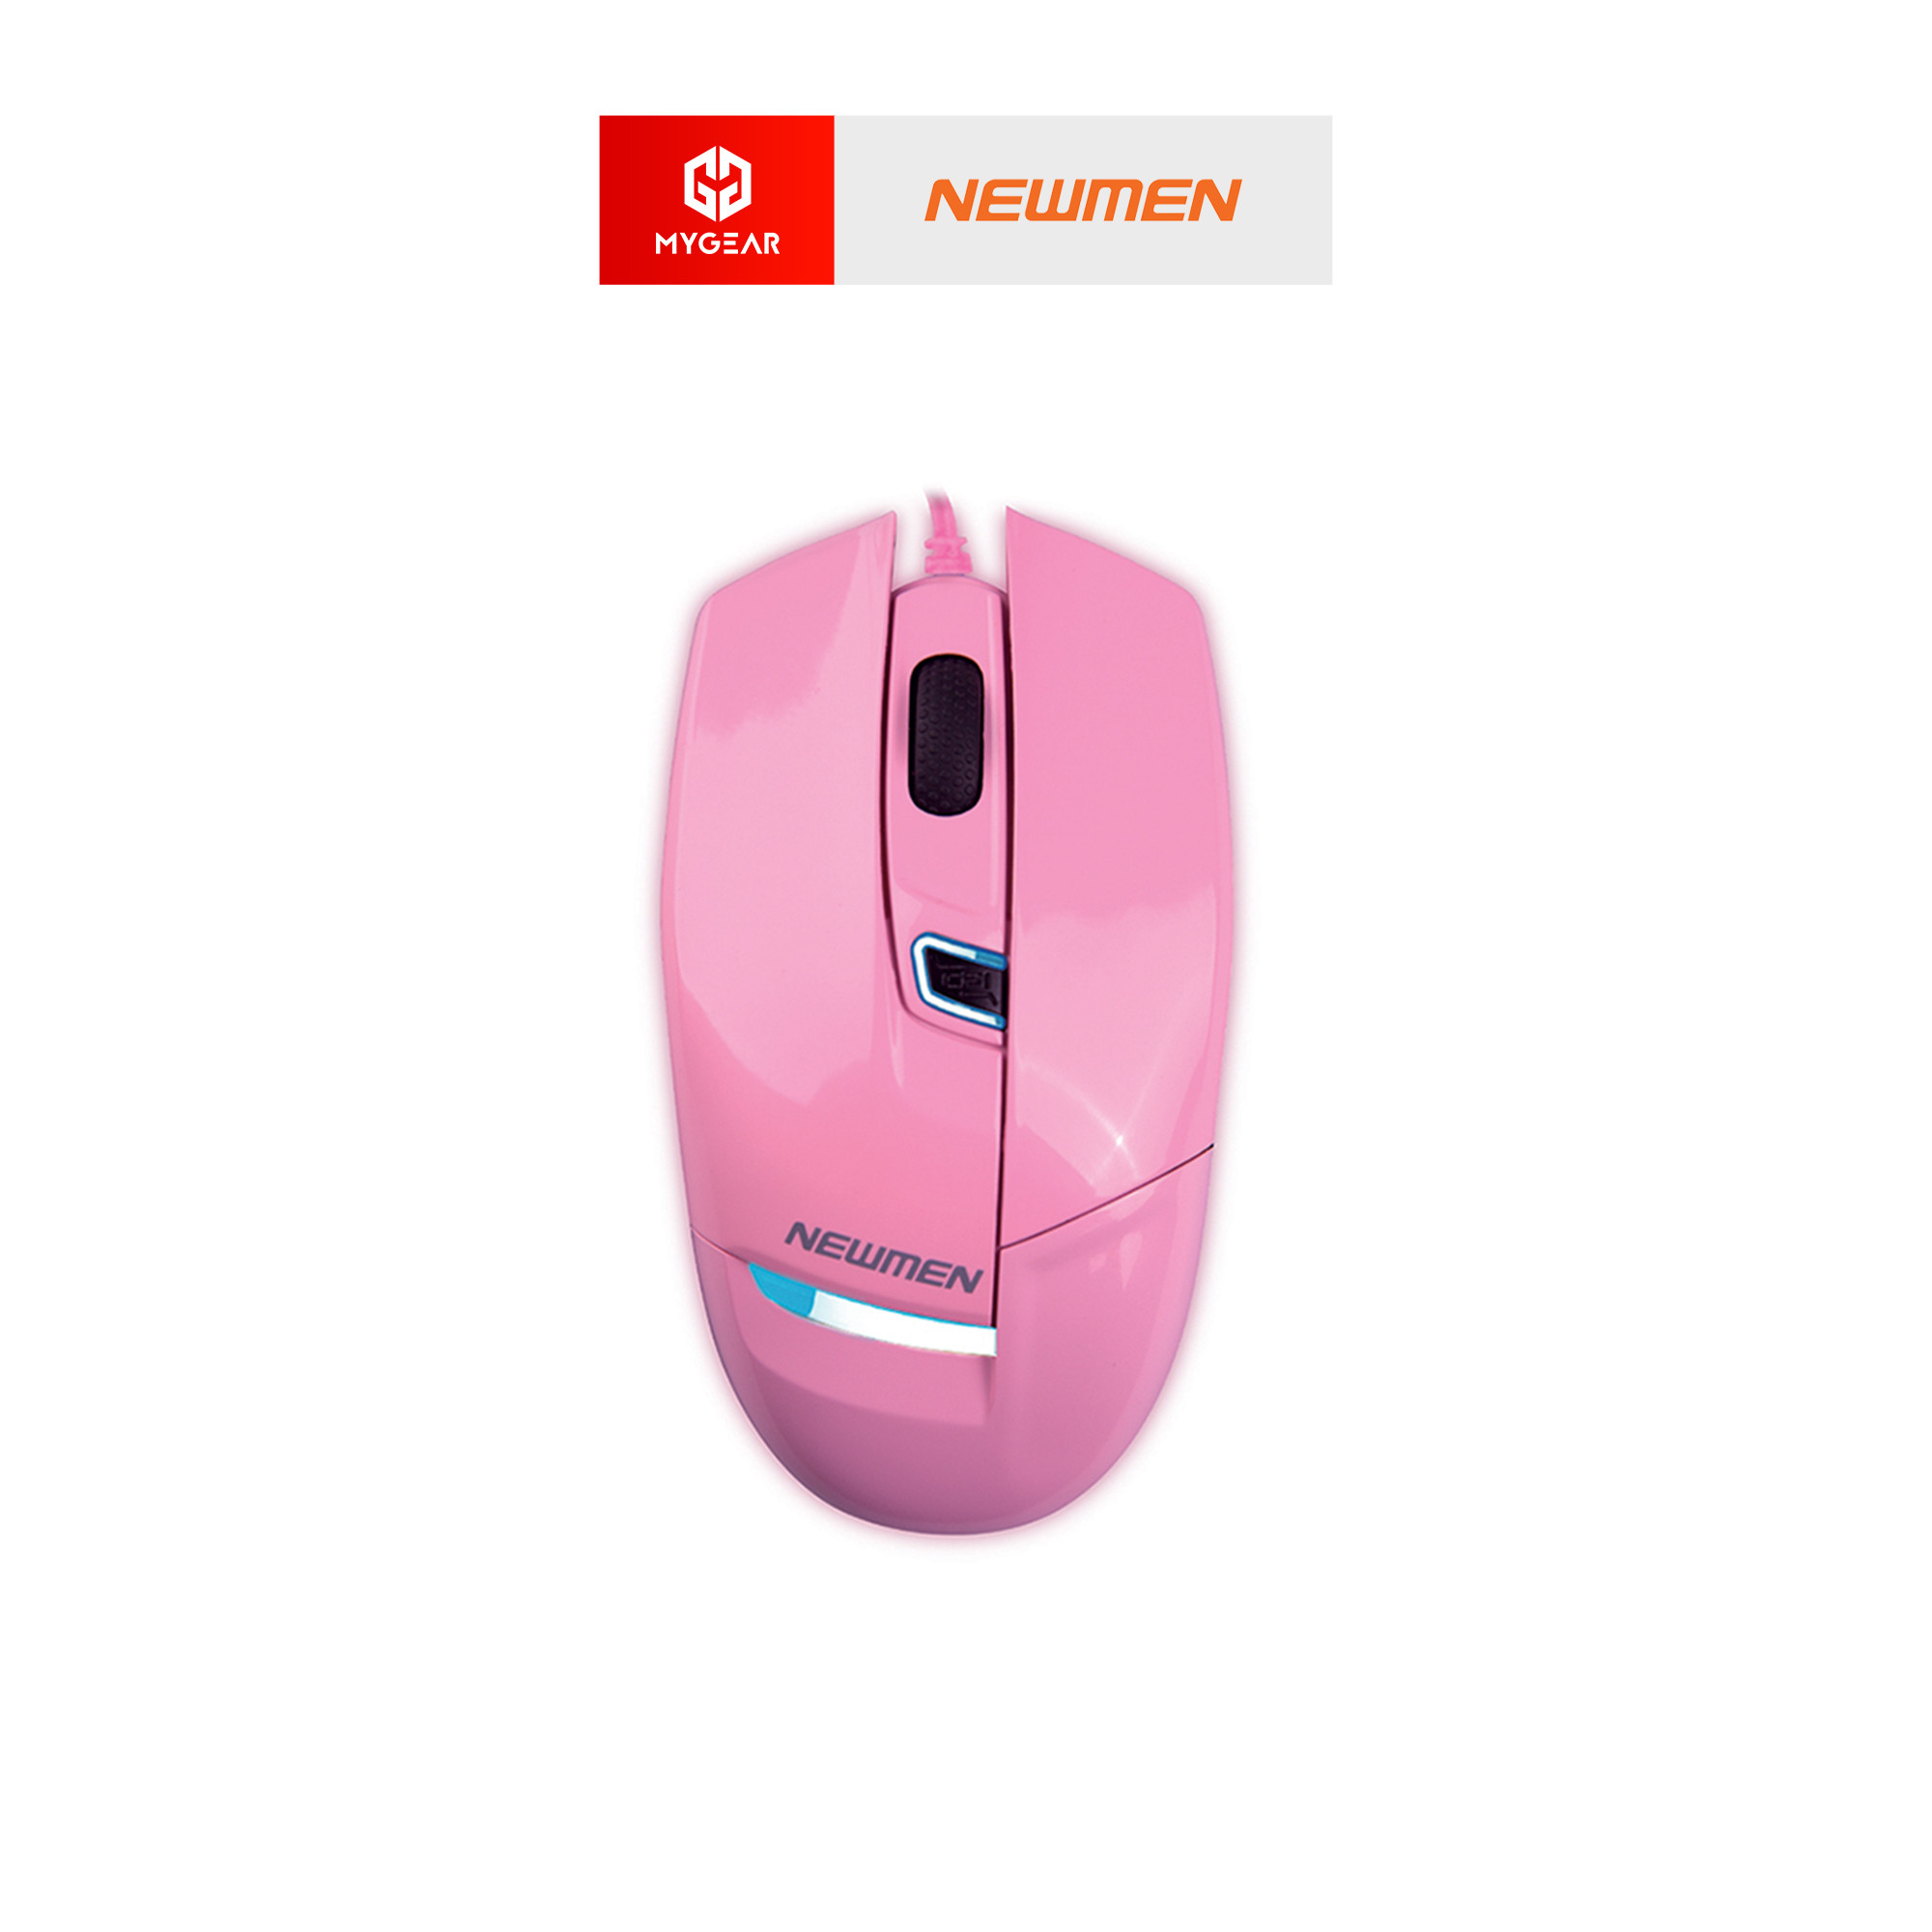 Chuột Newmen G10+ được thiết kế đẹp mắt với tông màu hồng nổi bật